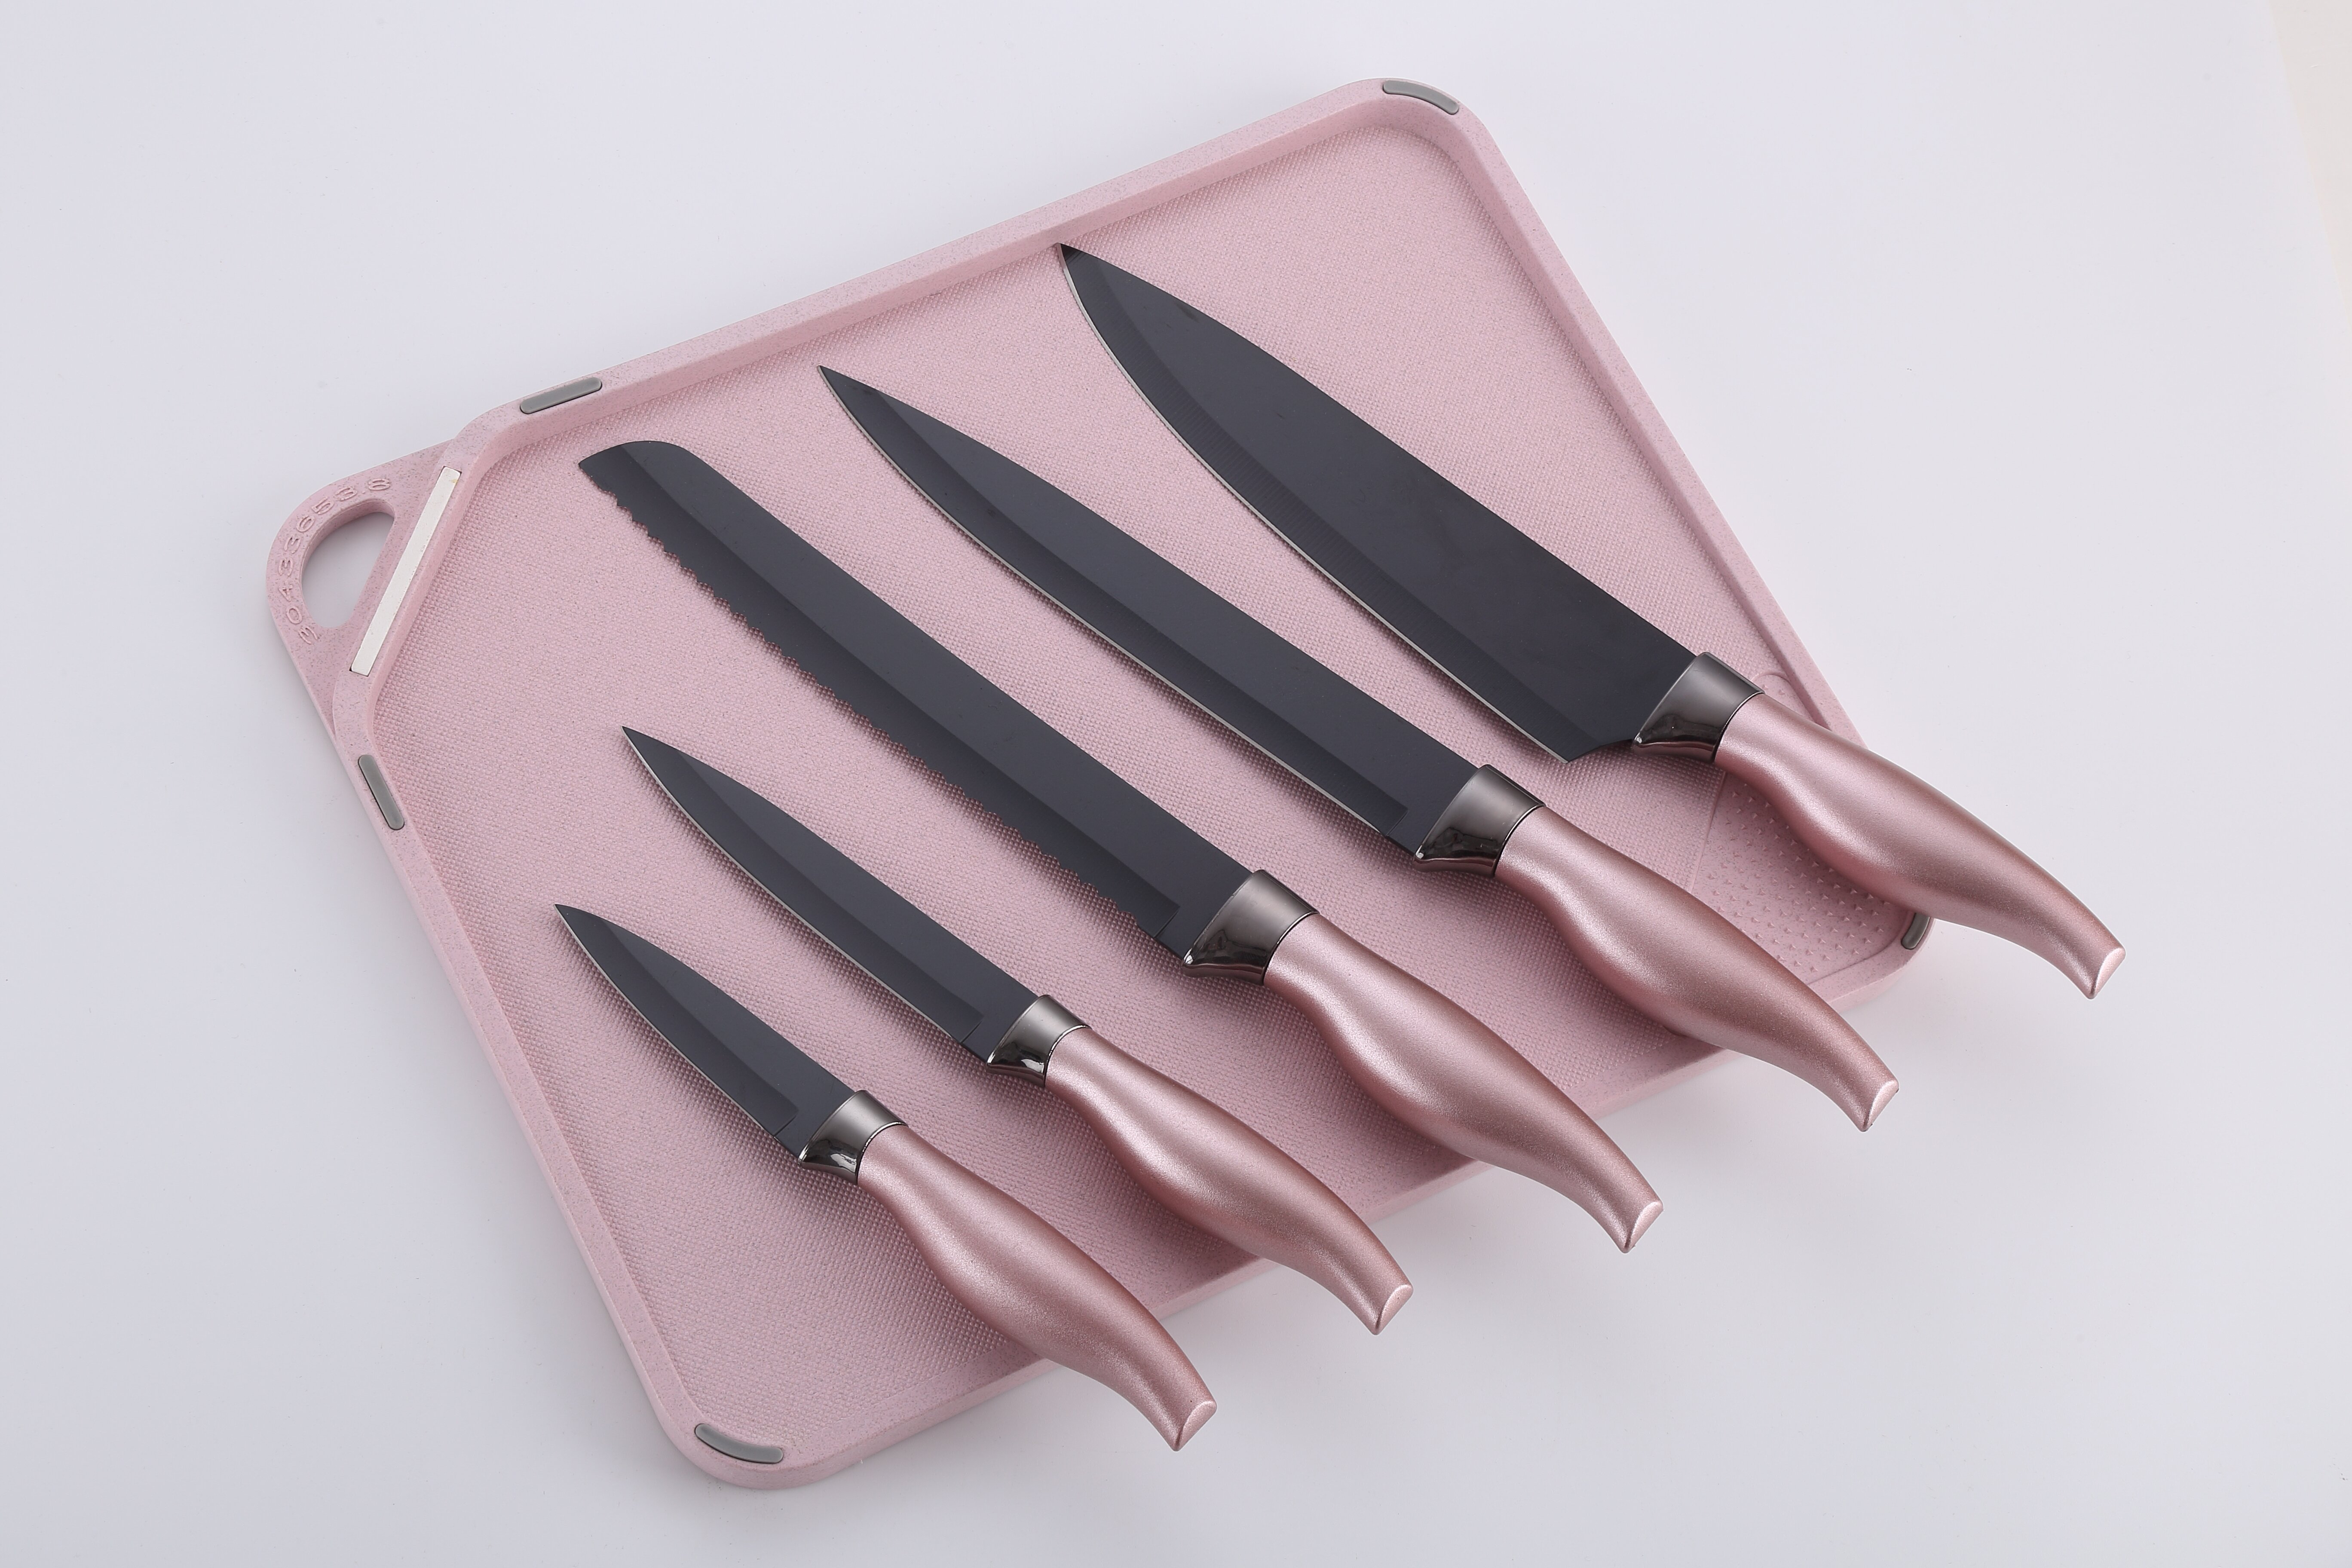 New Model Kichen Knife & Holder Set